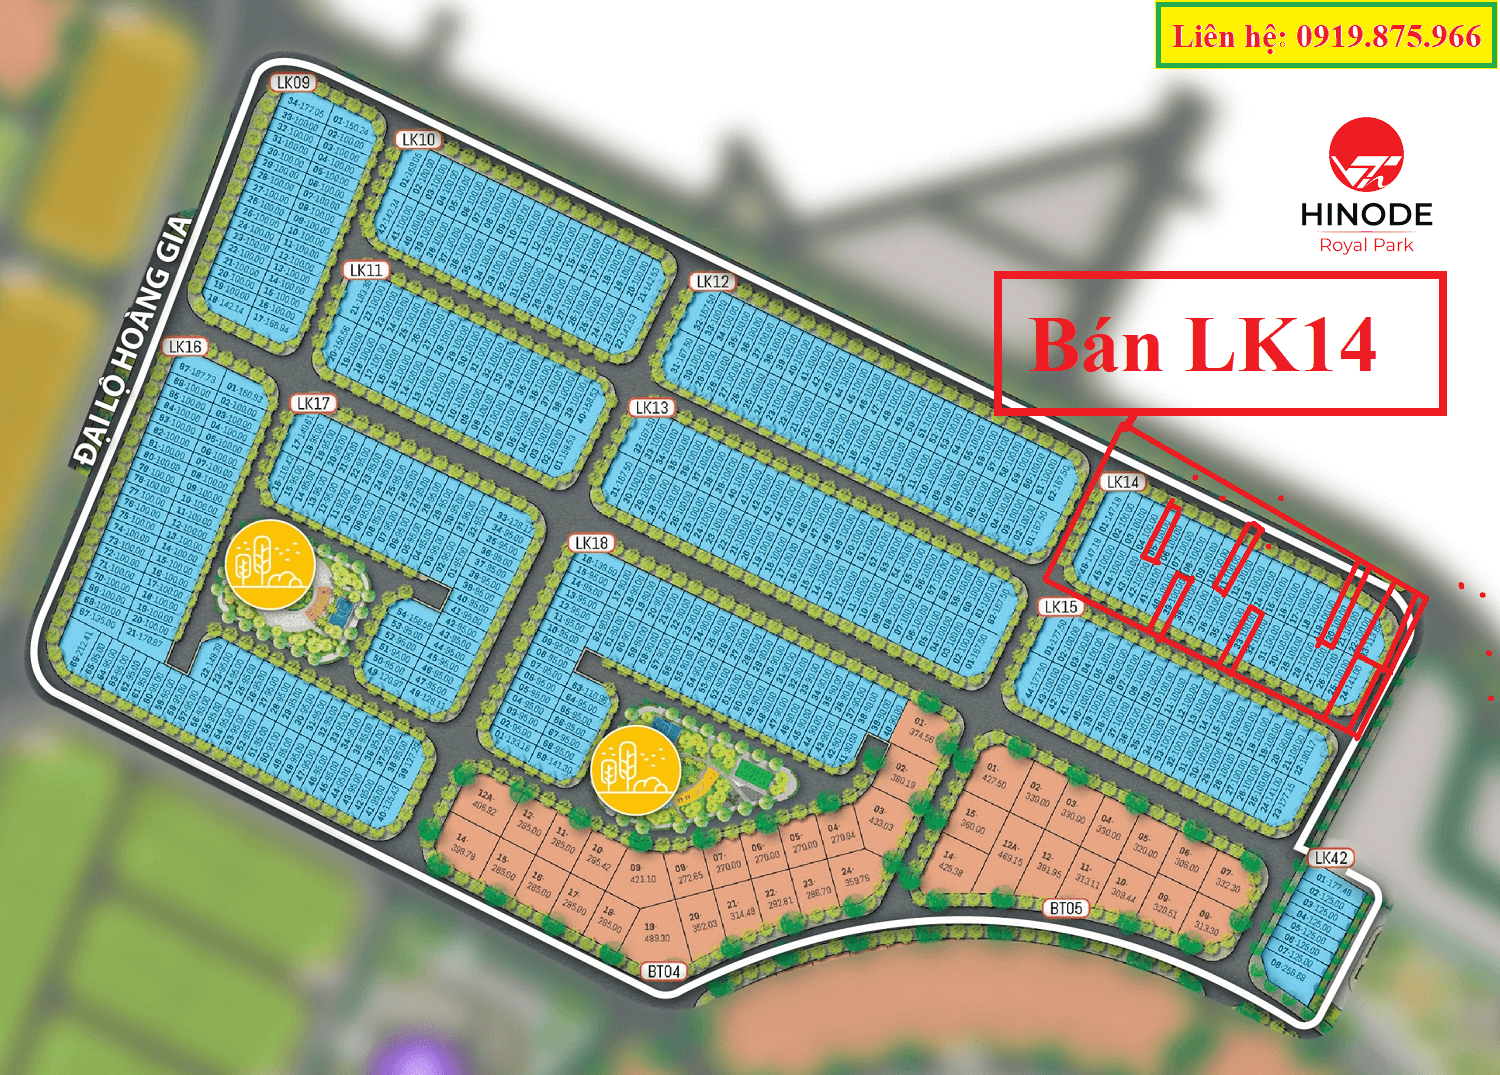 Bán liền kề LK14 Kim Chung Di Trạch, Hinode Royal Park Hoài Đức